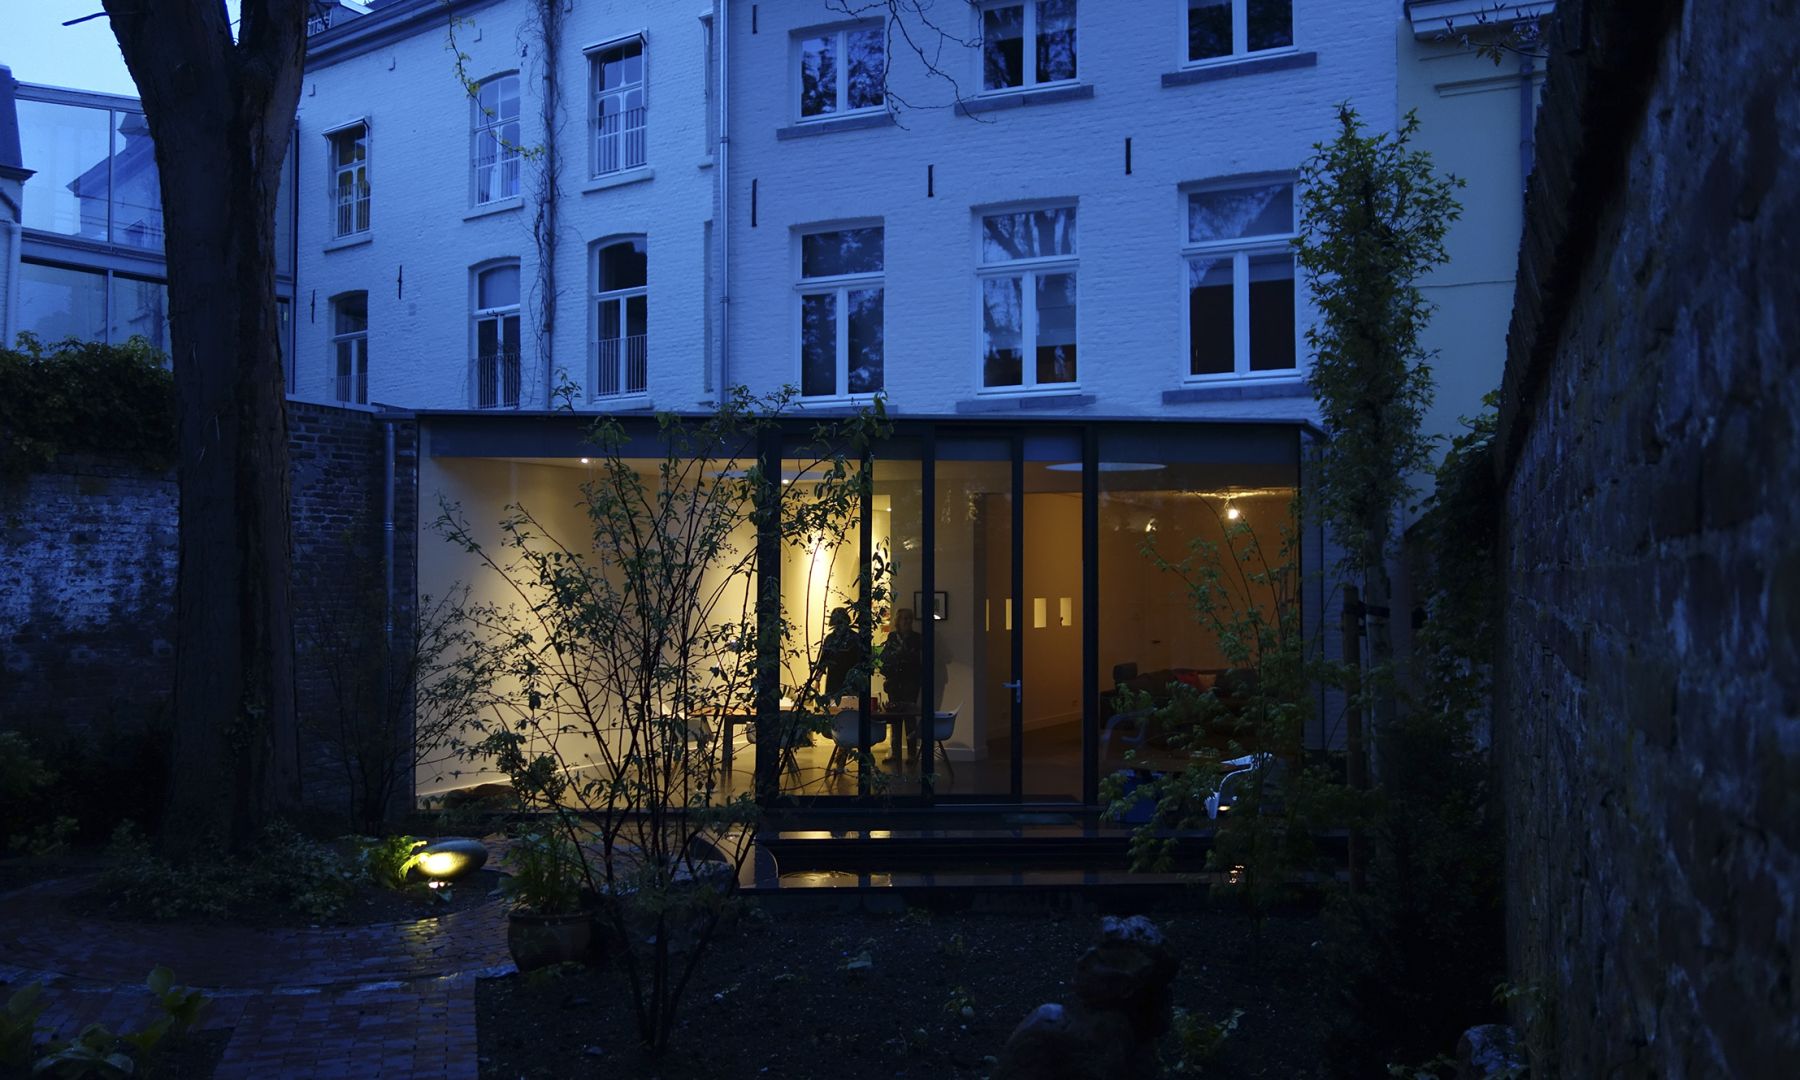 Stadswoning met atelier - Maastricht, Engelman Architecten